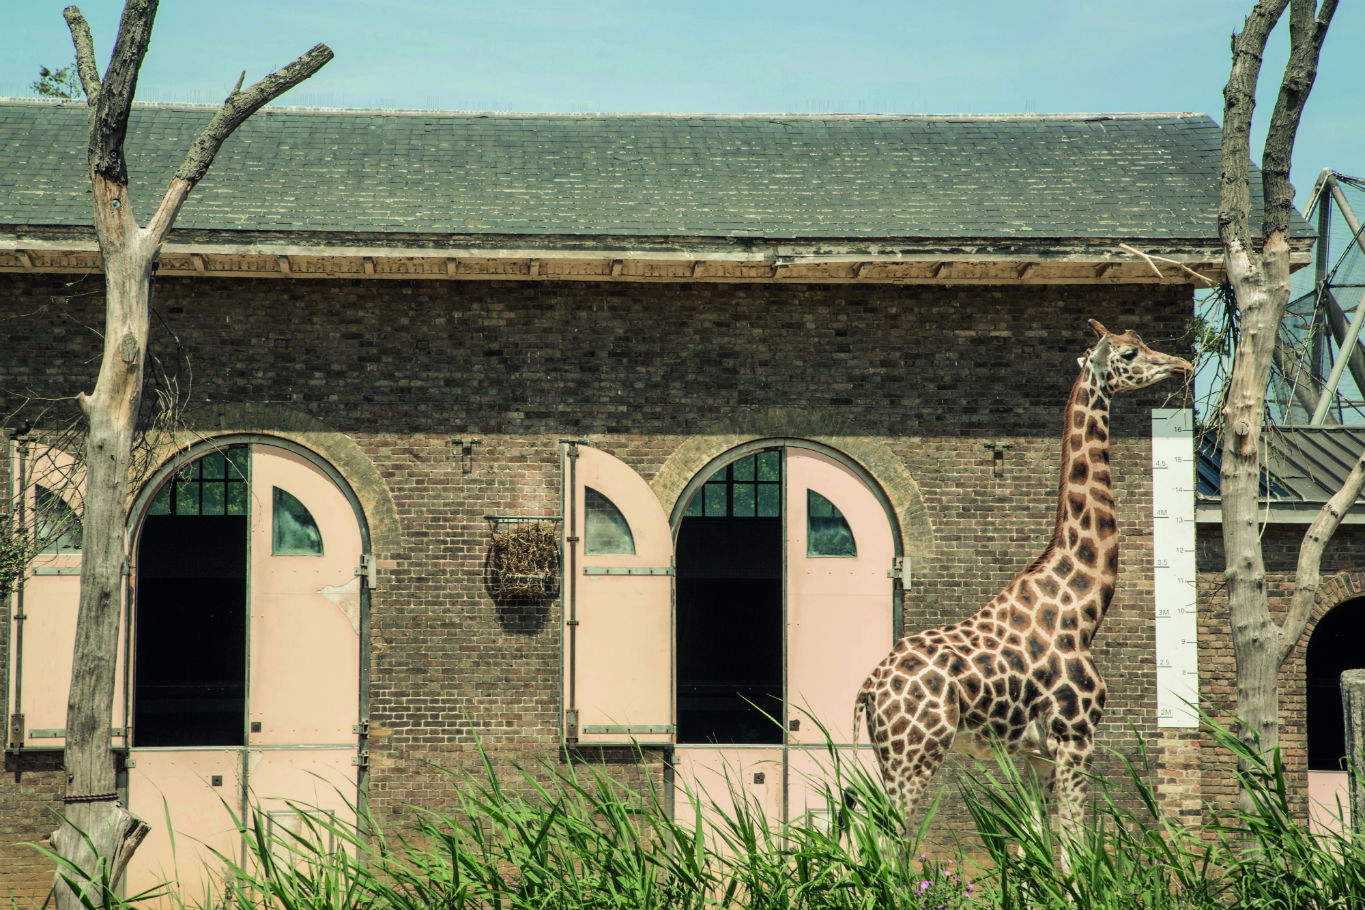 Giraffe at London Zoo